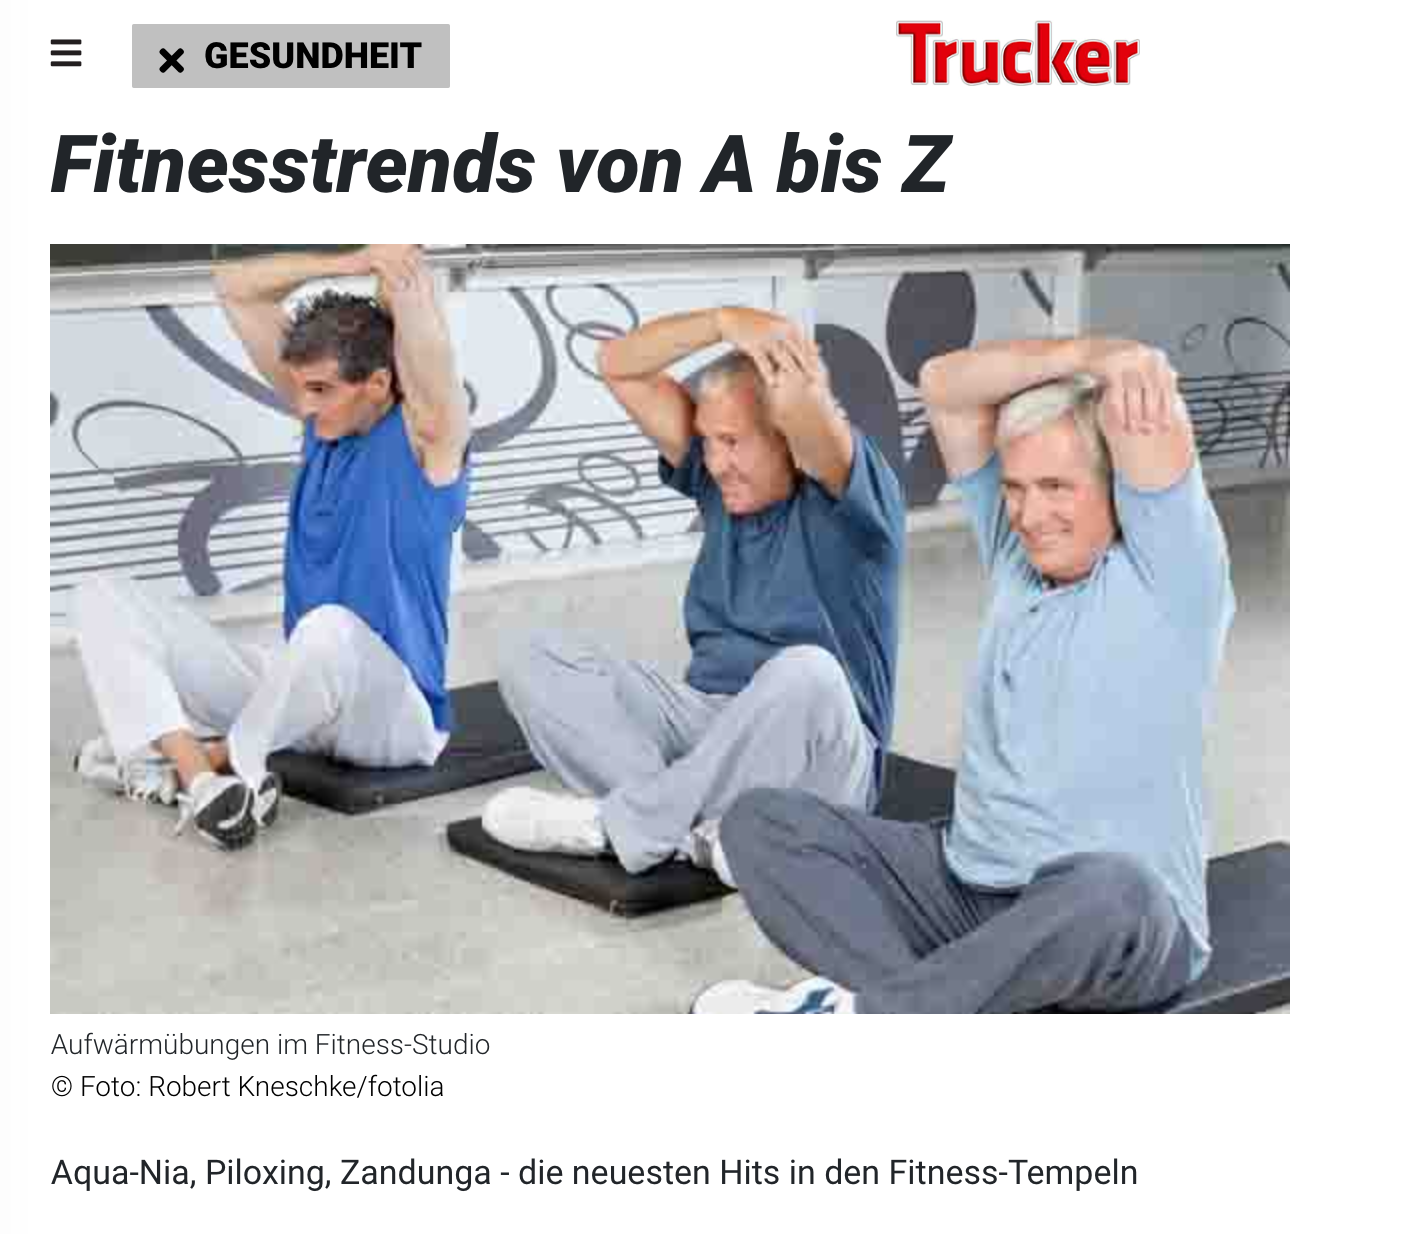 TRUCKER MAGAZINE FEBRUARY 13, 2013: Fitnesstrends von A bis Z